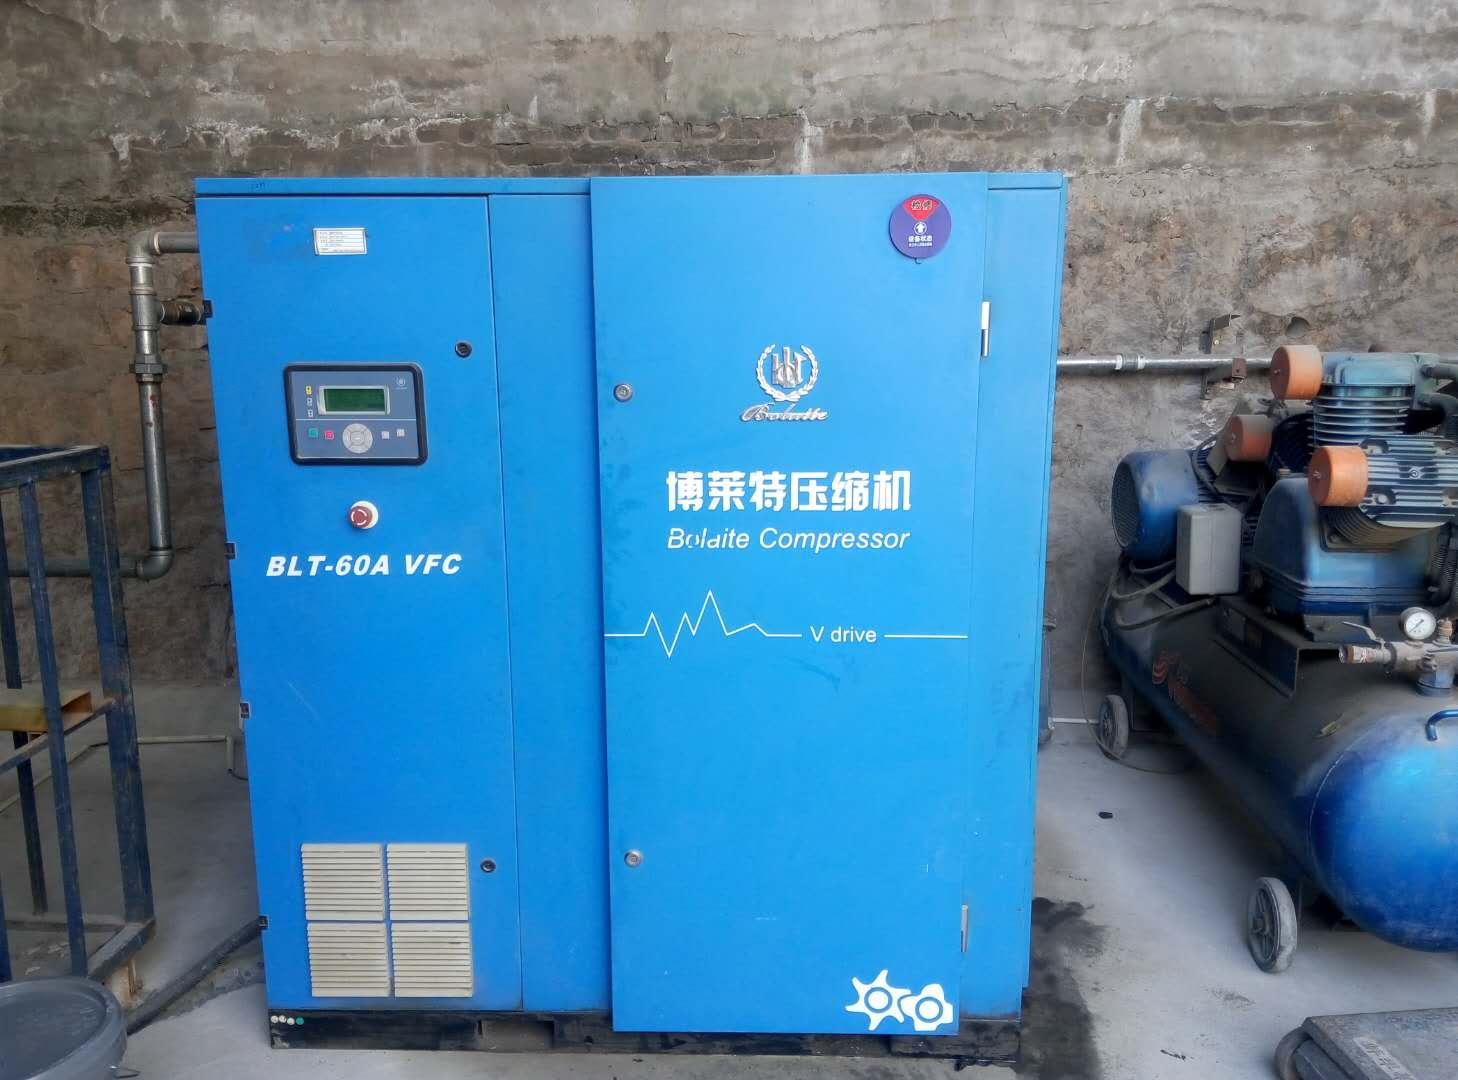 供应滁州变频空压机/滁州博莱特空压机/滁州螺杆空压机